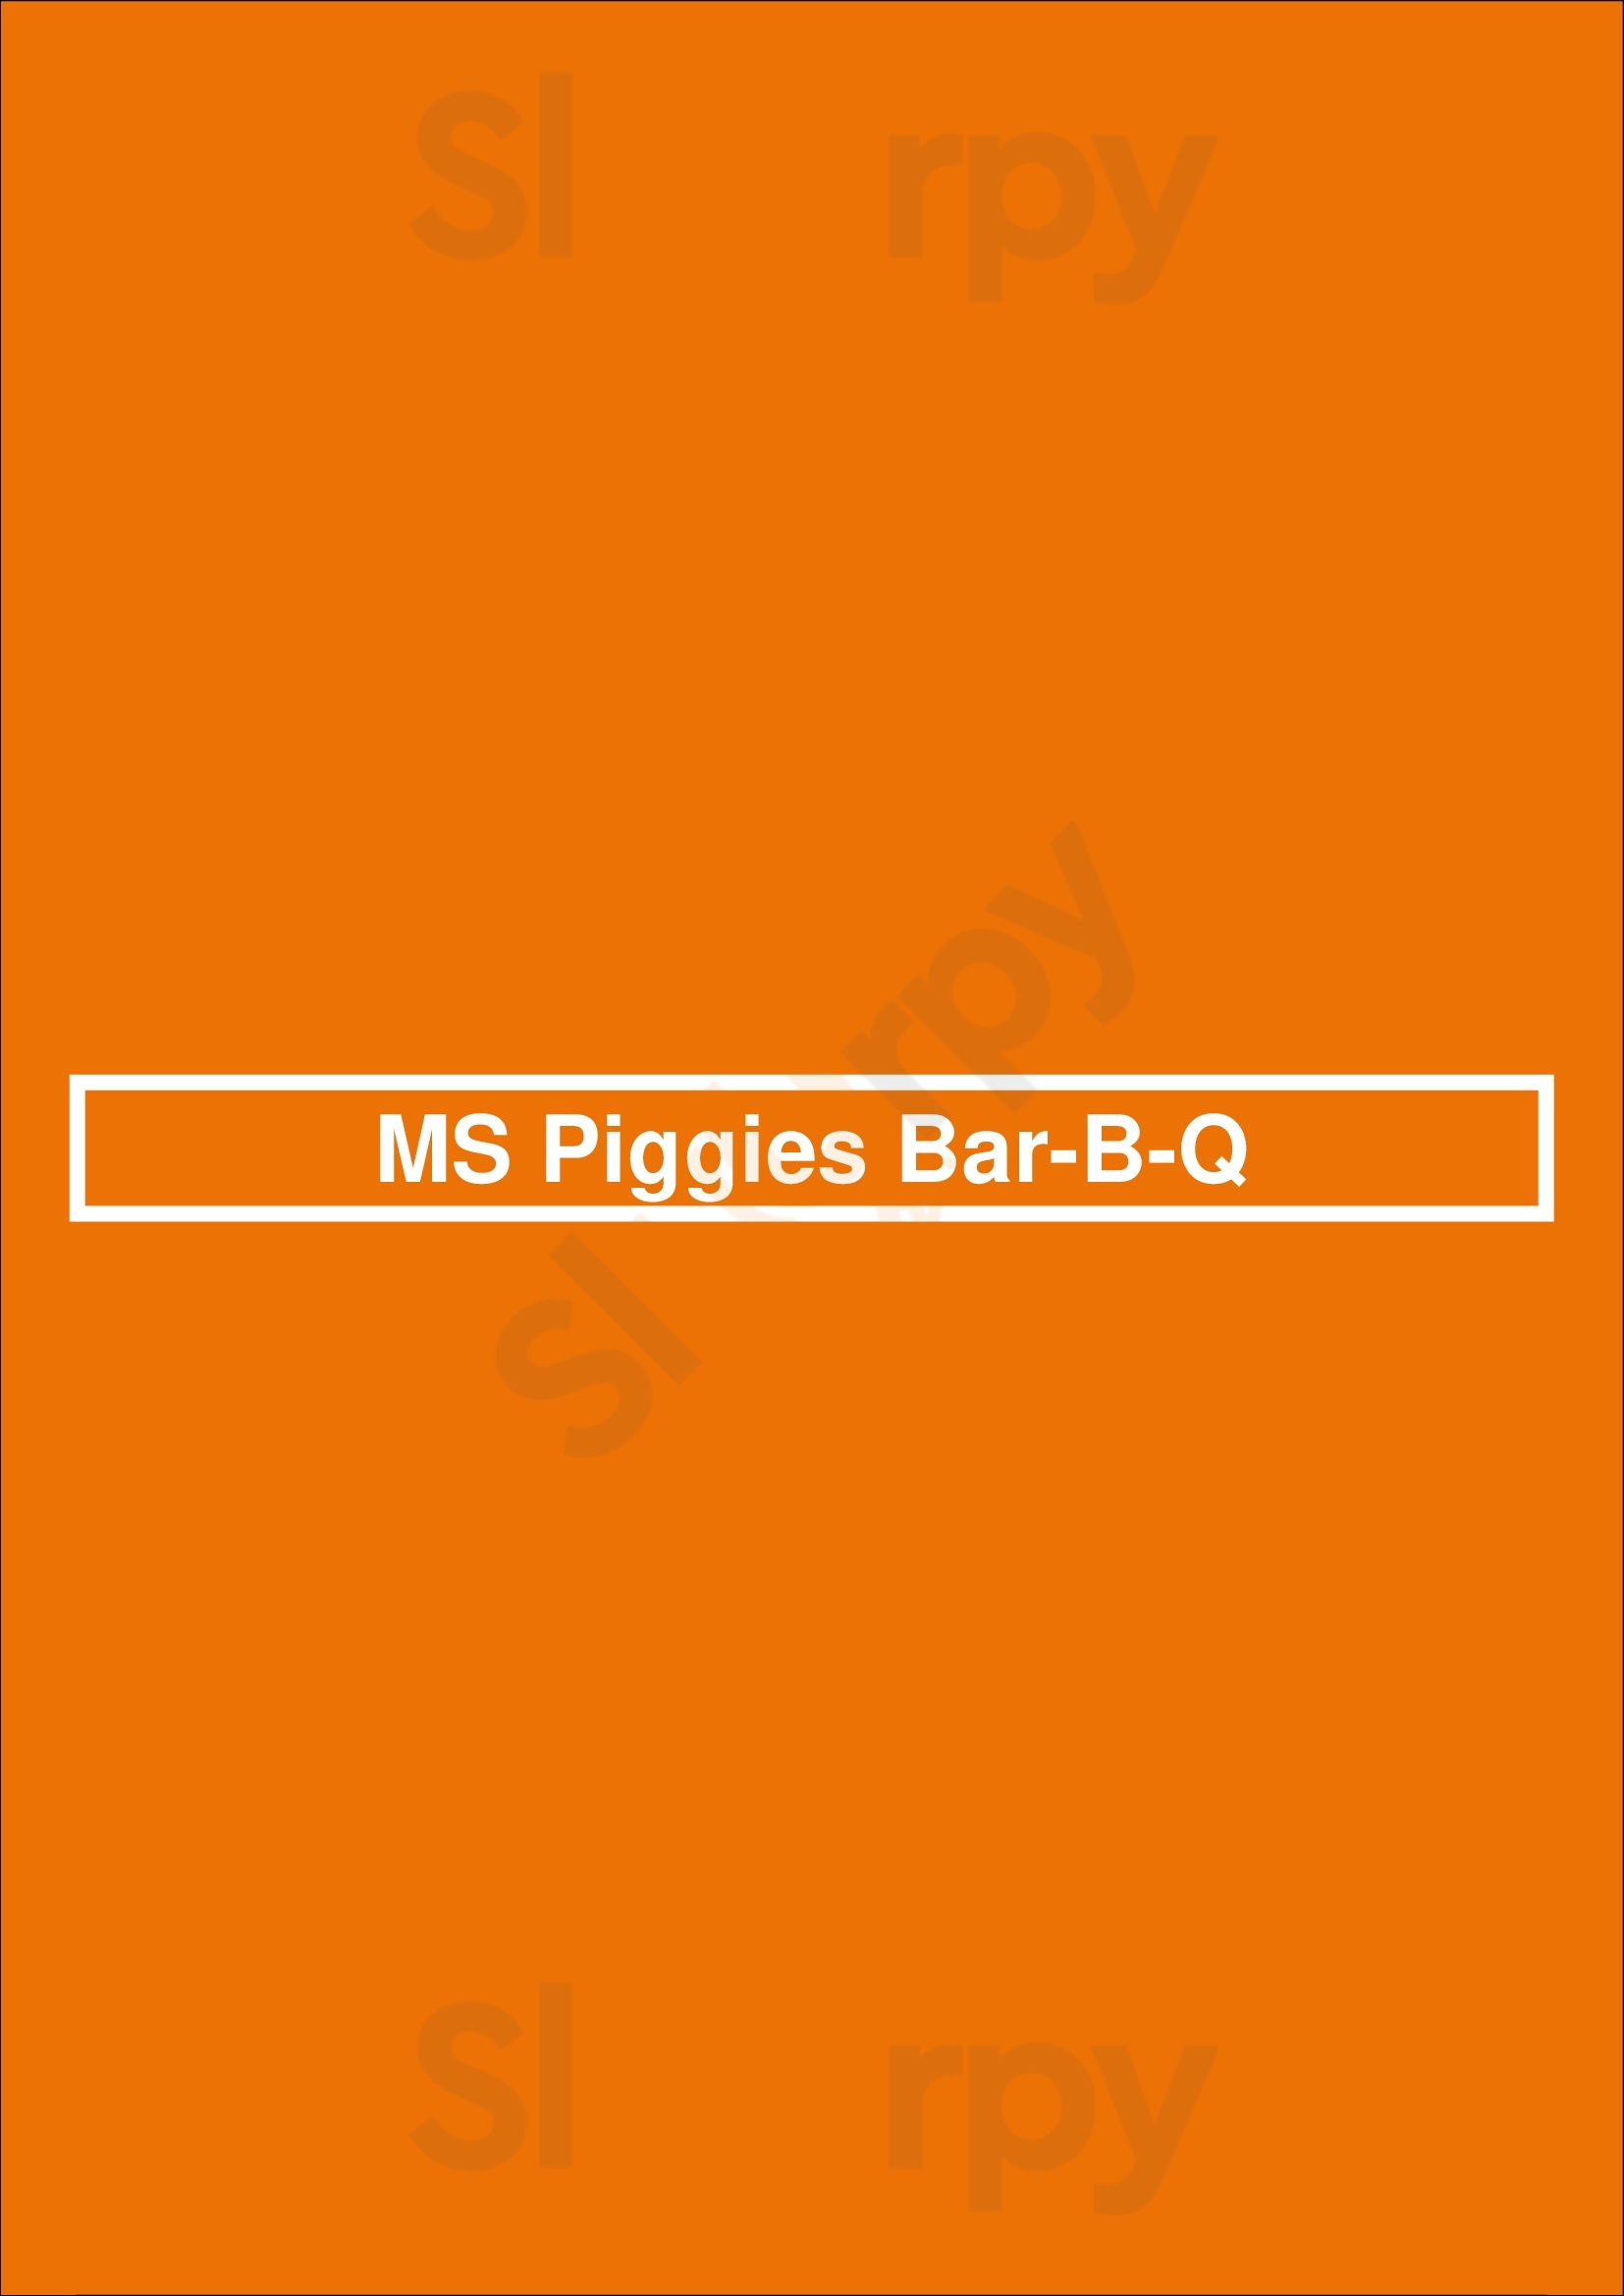 Ms. Piggies Smokehouse Saint Louis Menu - 1